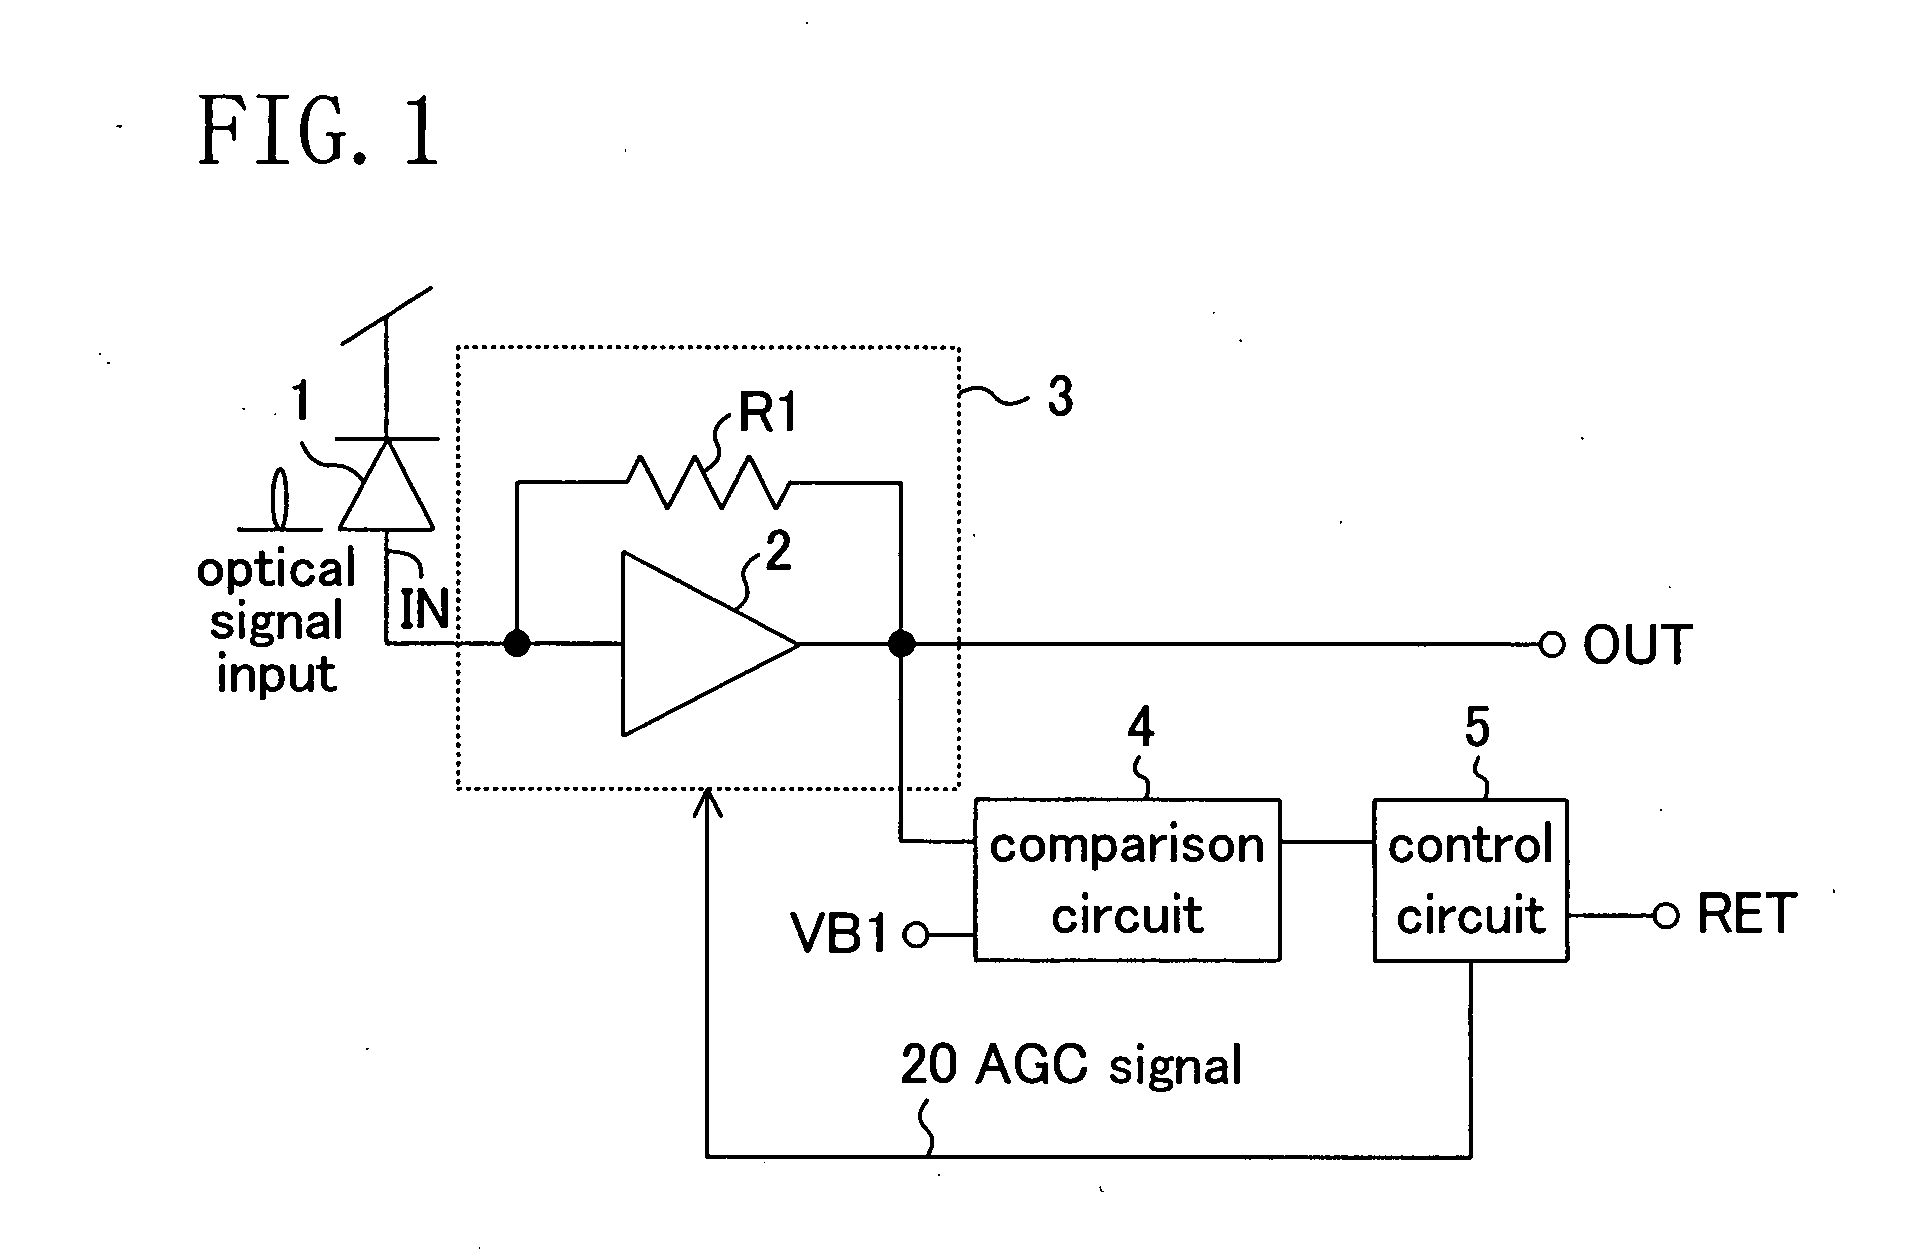 Receiving Circuit and Optical Signal Receiving Circuit